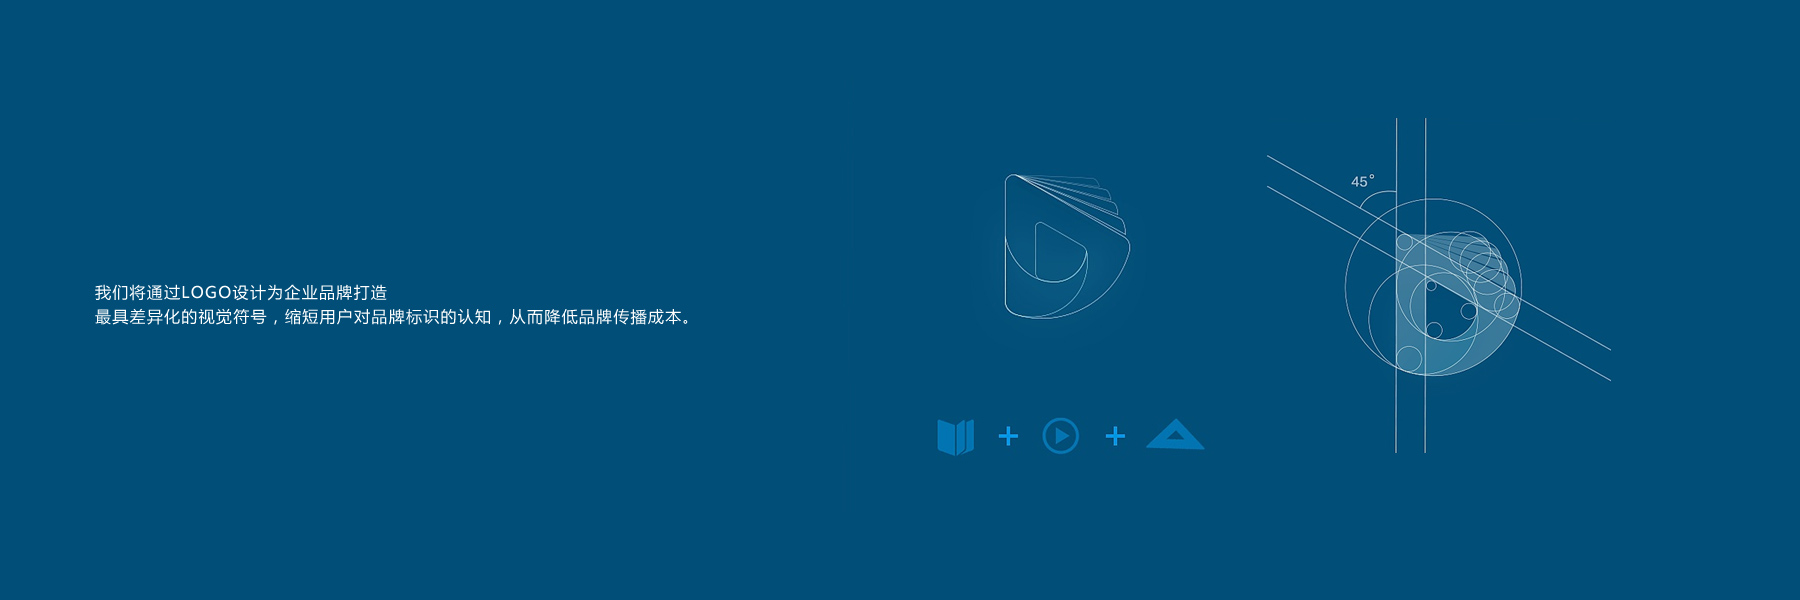 上辰是武漢專業的品牌logo設計公司